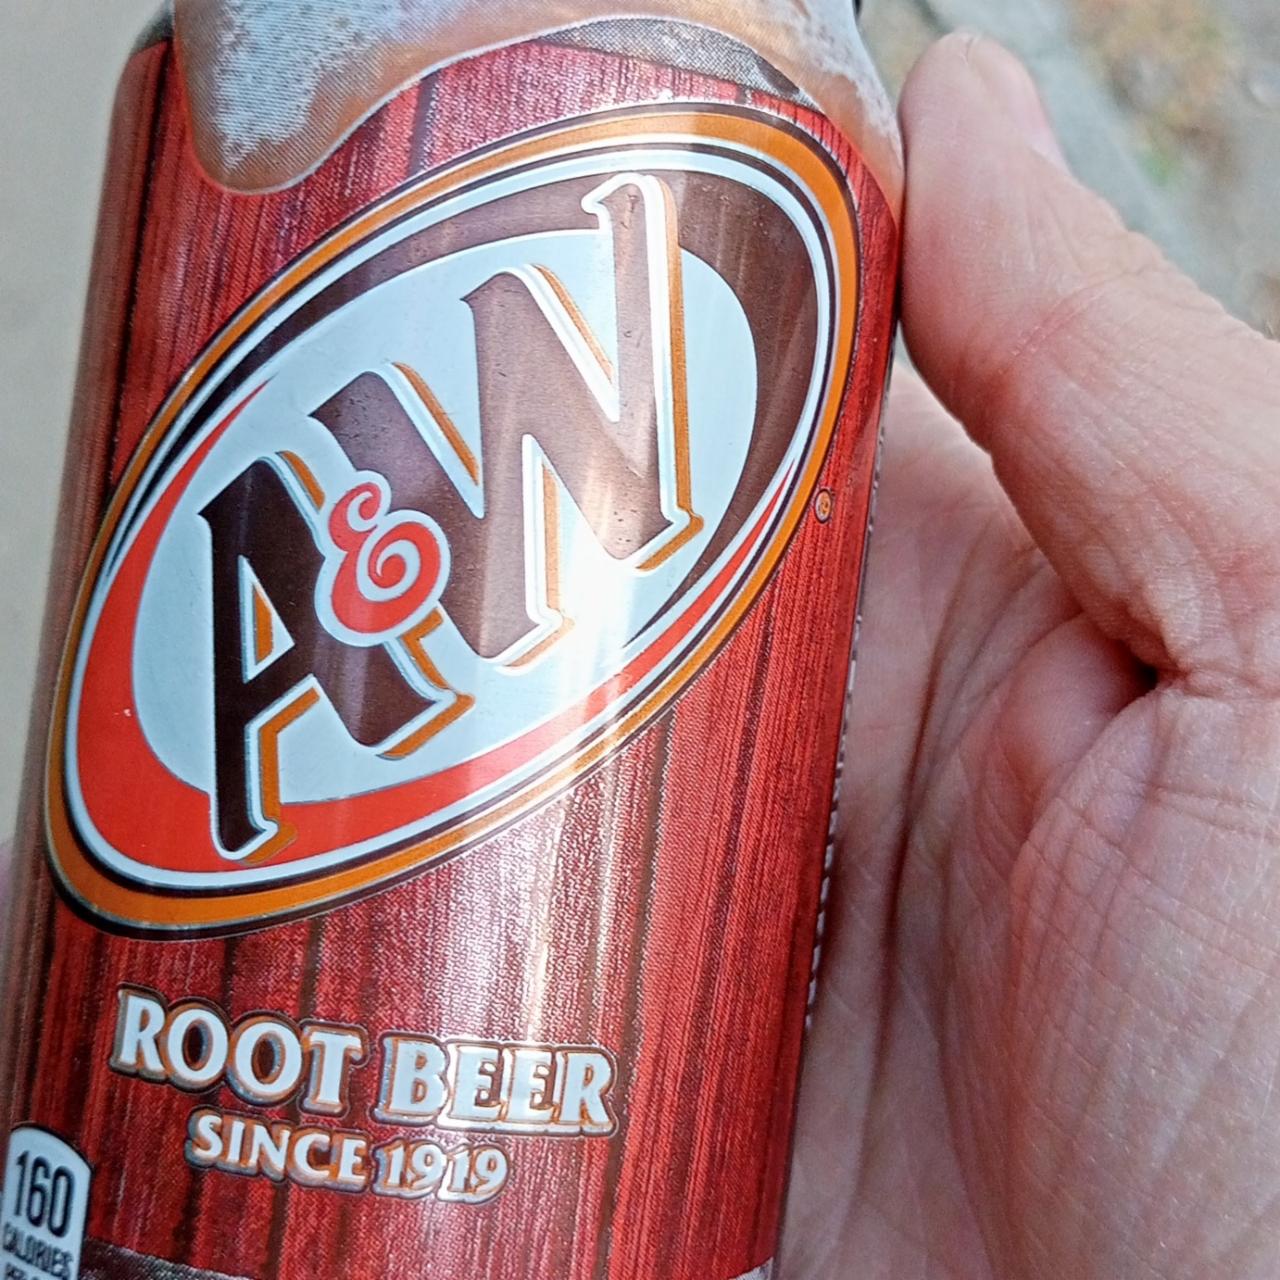 Fotografie - A&W Root Beer